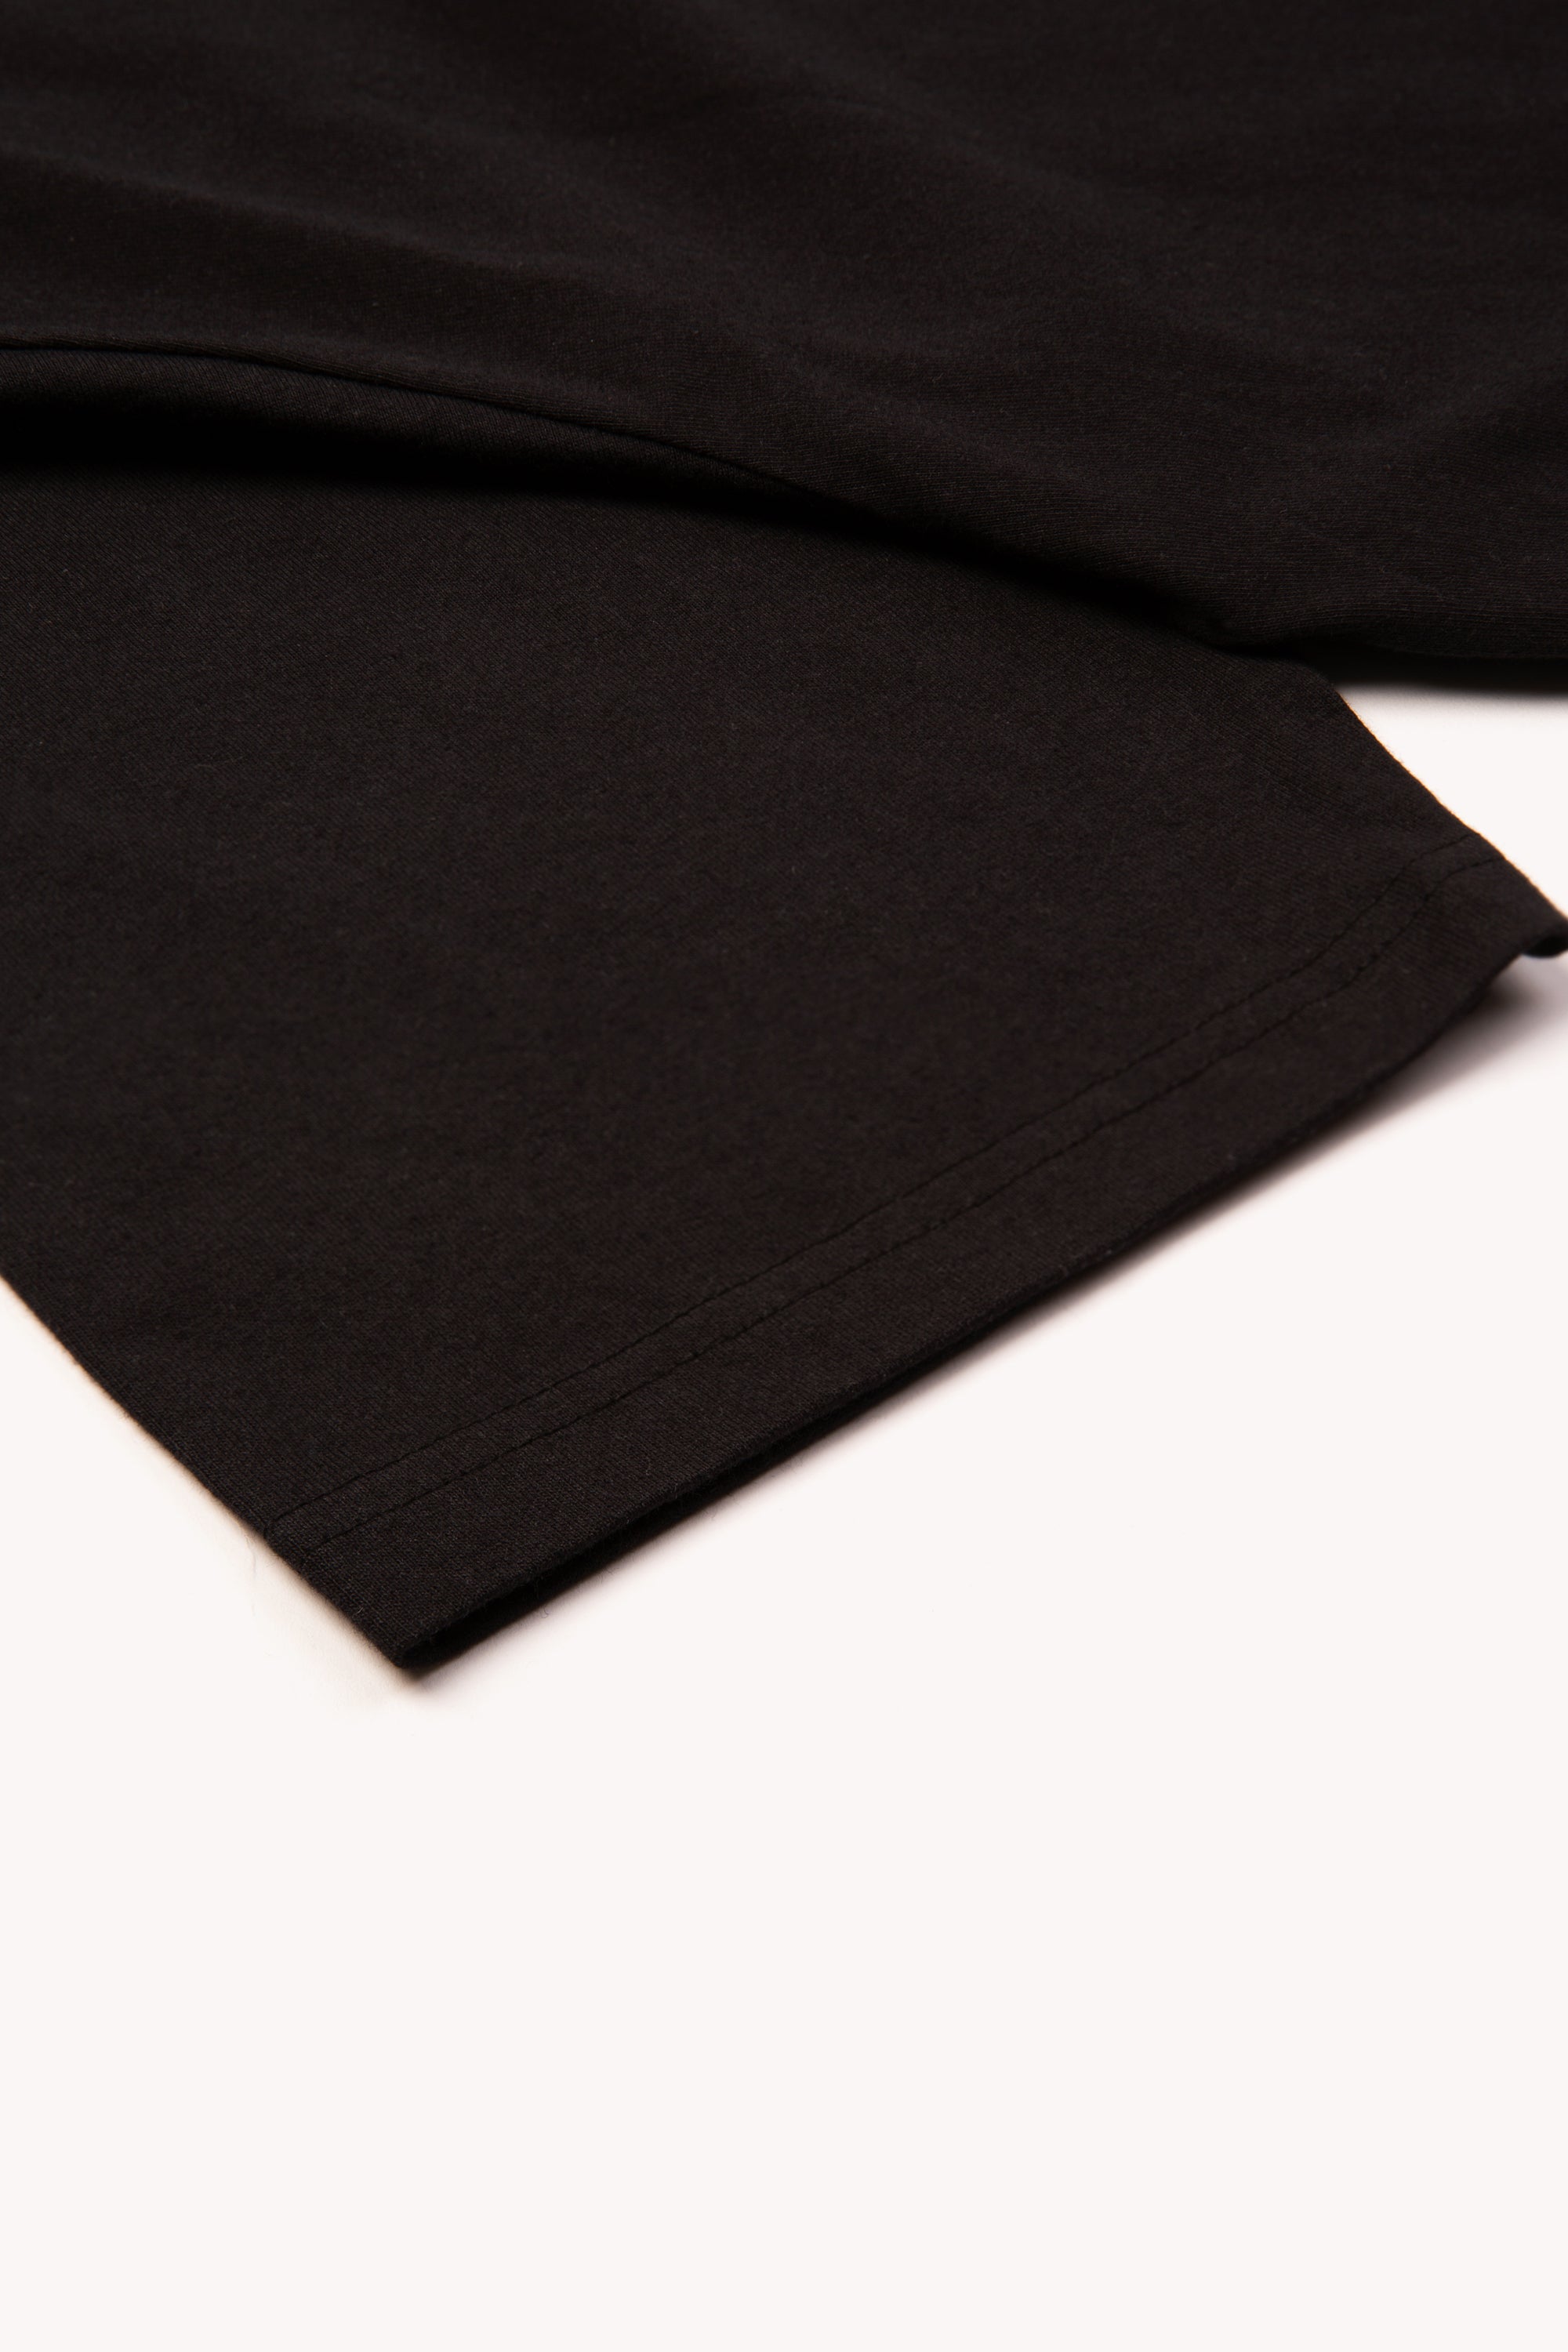 OG T-Shirt 3M Black - BOILER ROOM